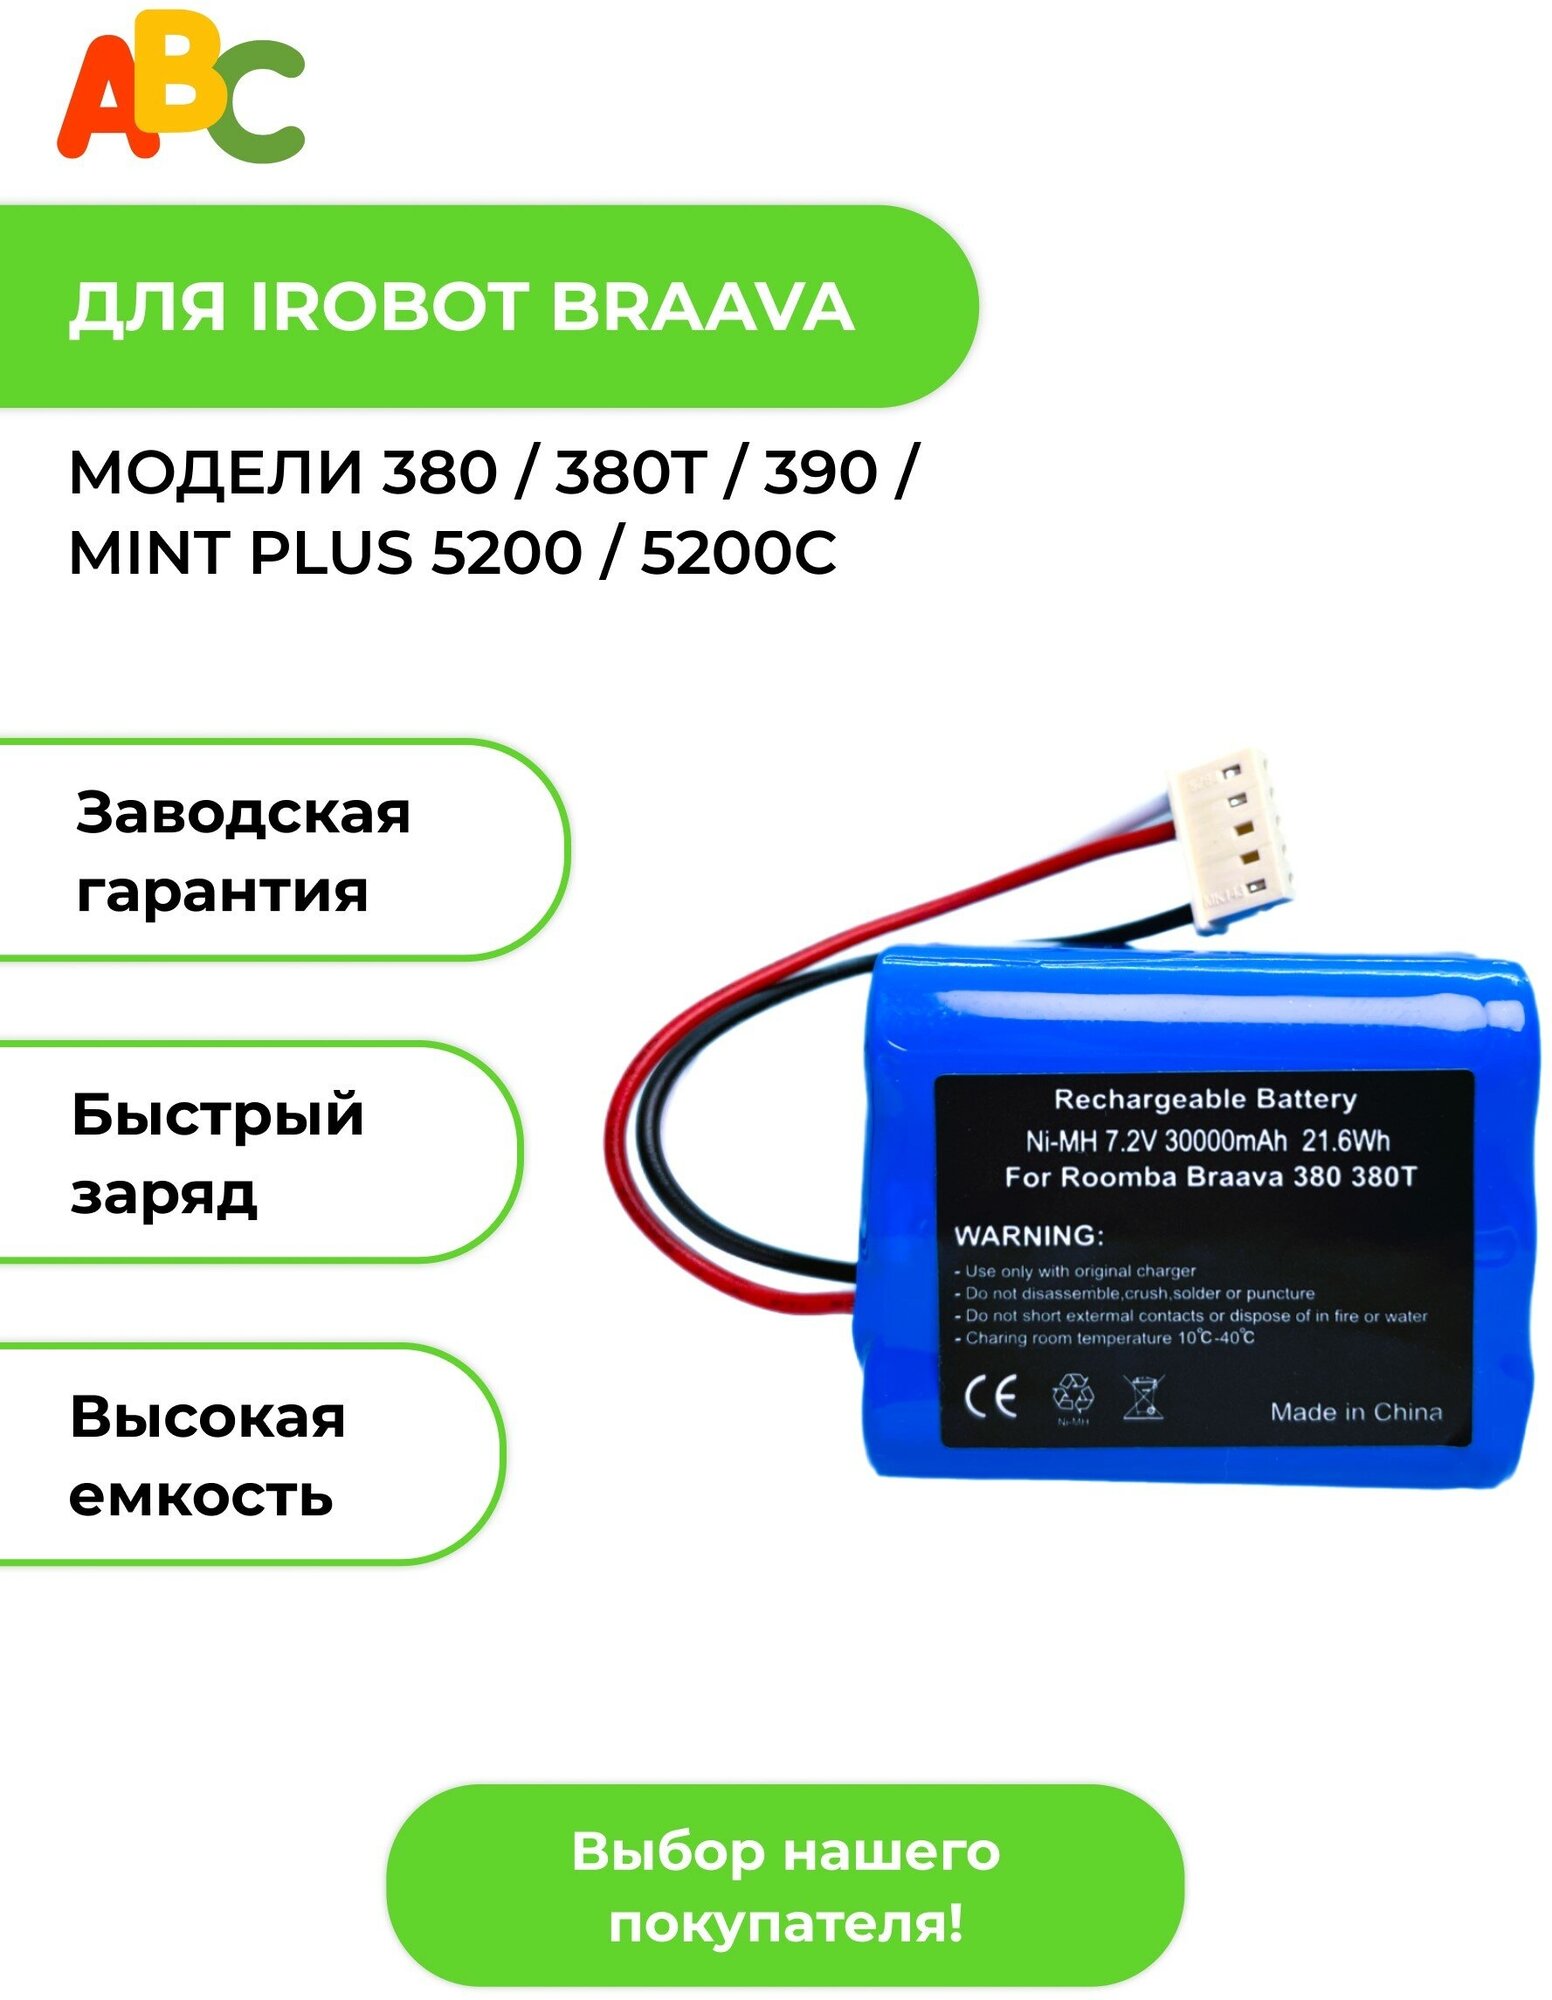 Аккумулятор ABC для робота-пылесоса IRobot Braava 380